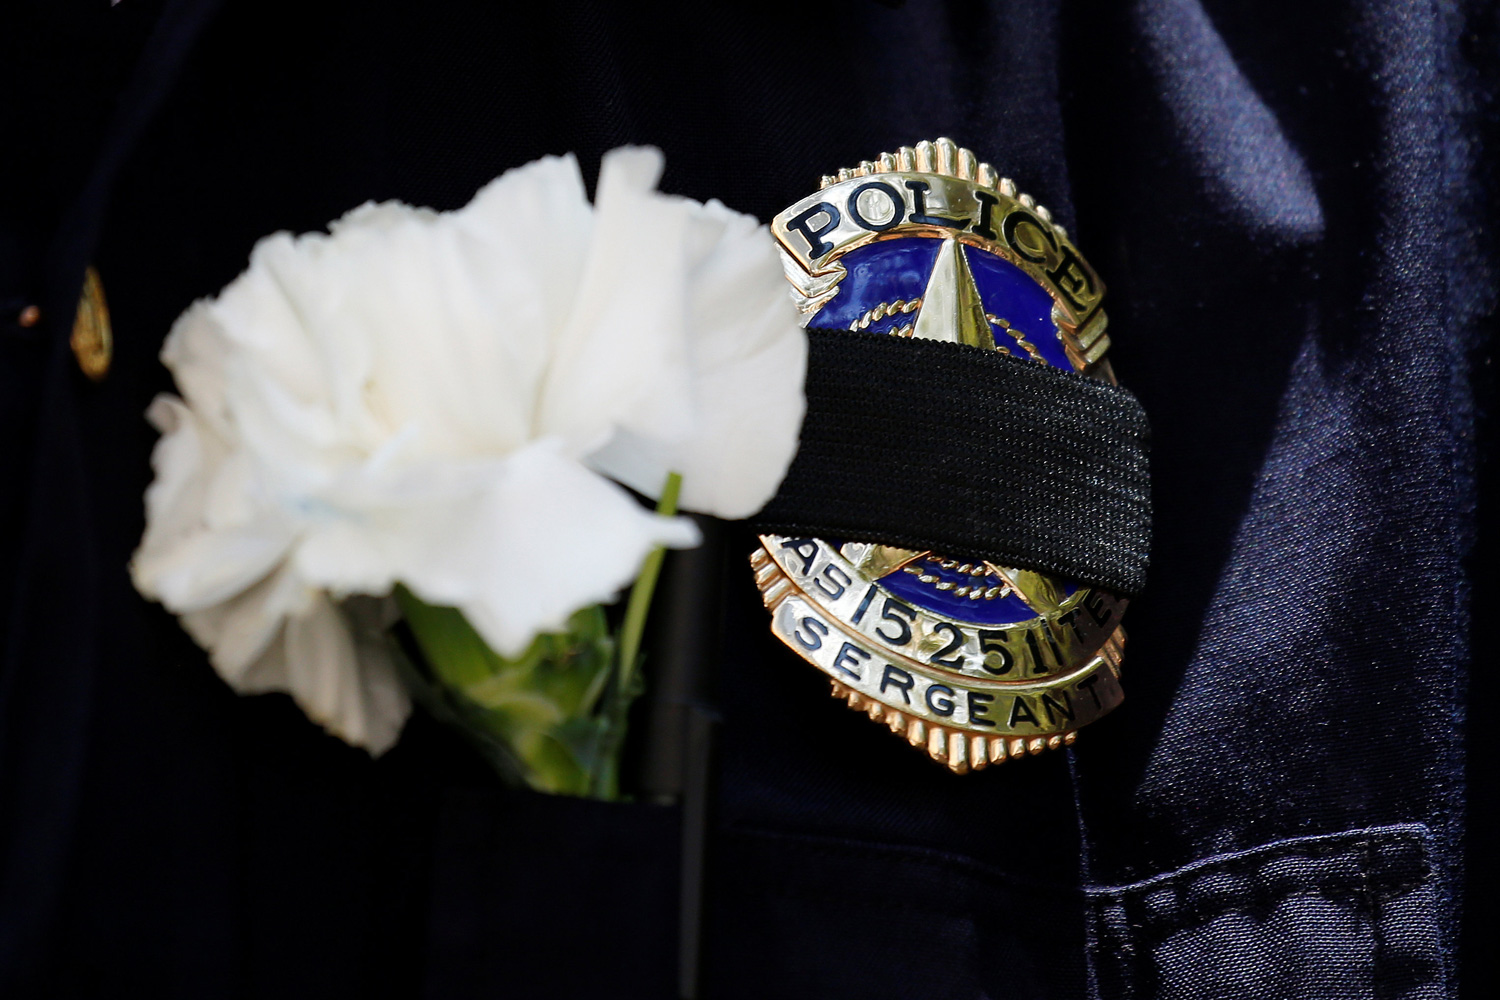 El atacante de Dallas era un veterano condecorado por luchar contra el terrorismo